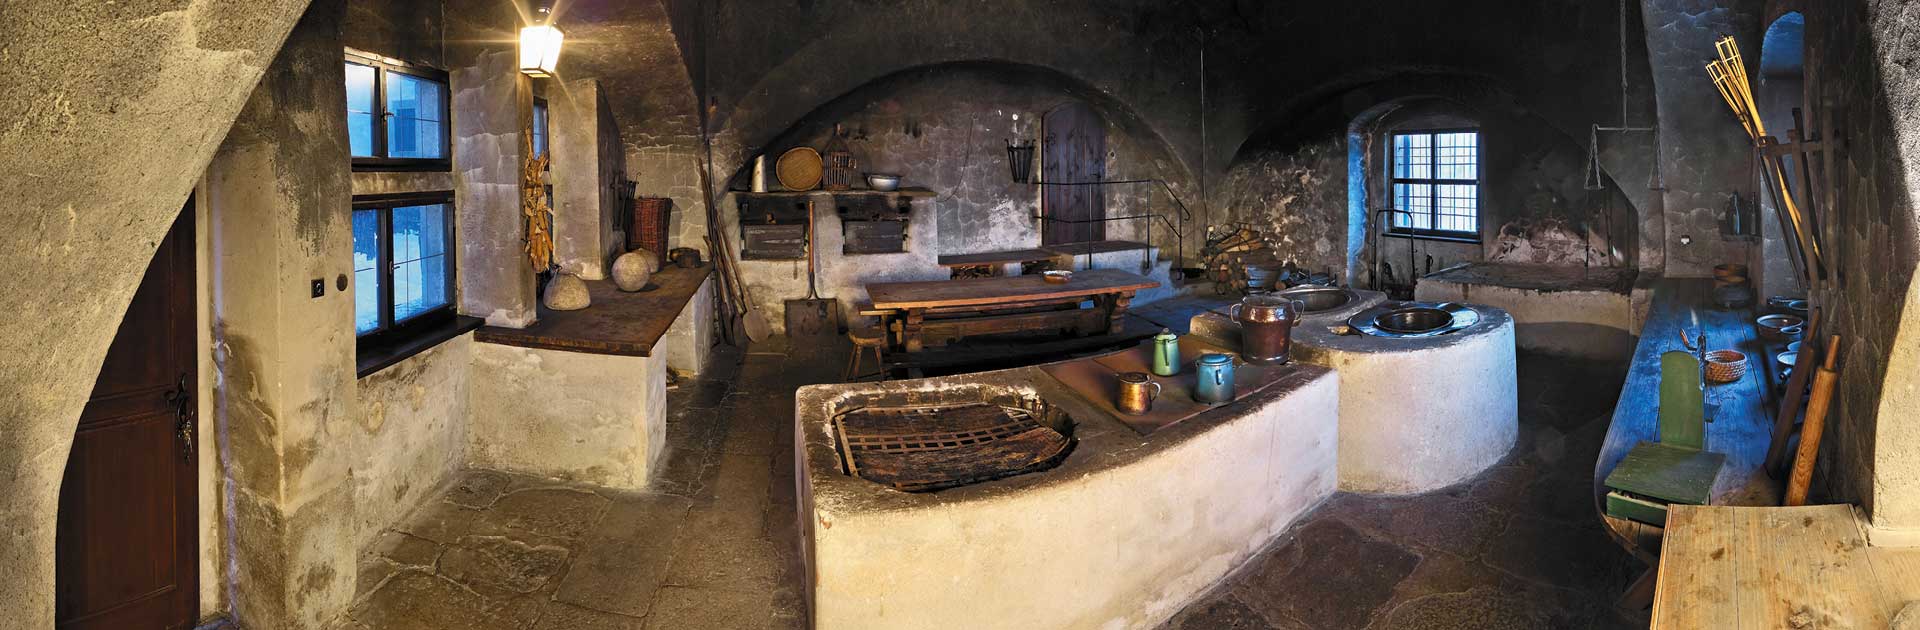 Černá kuchyně Jindřichův Hradec, foto: Libor Sváček